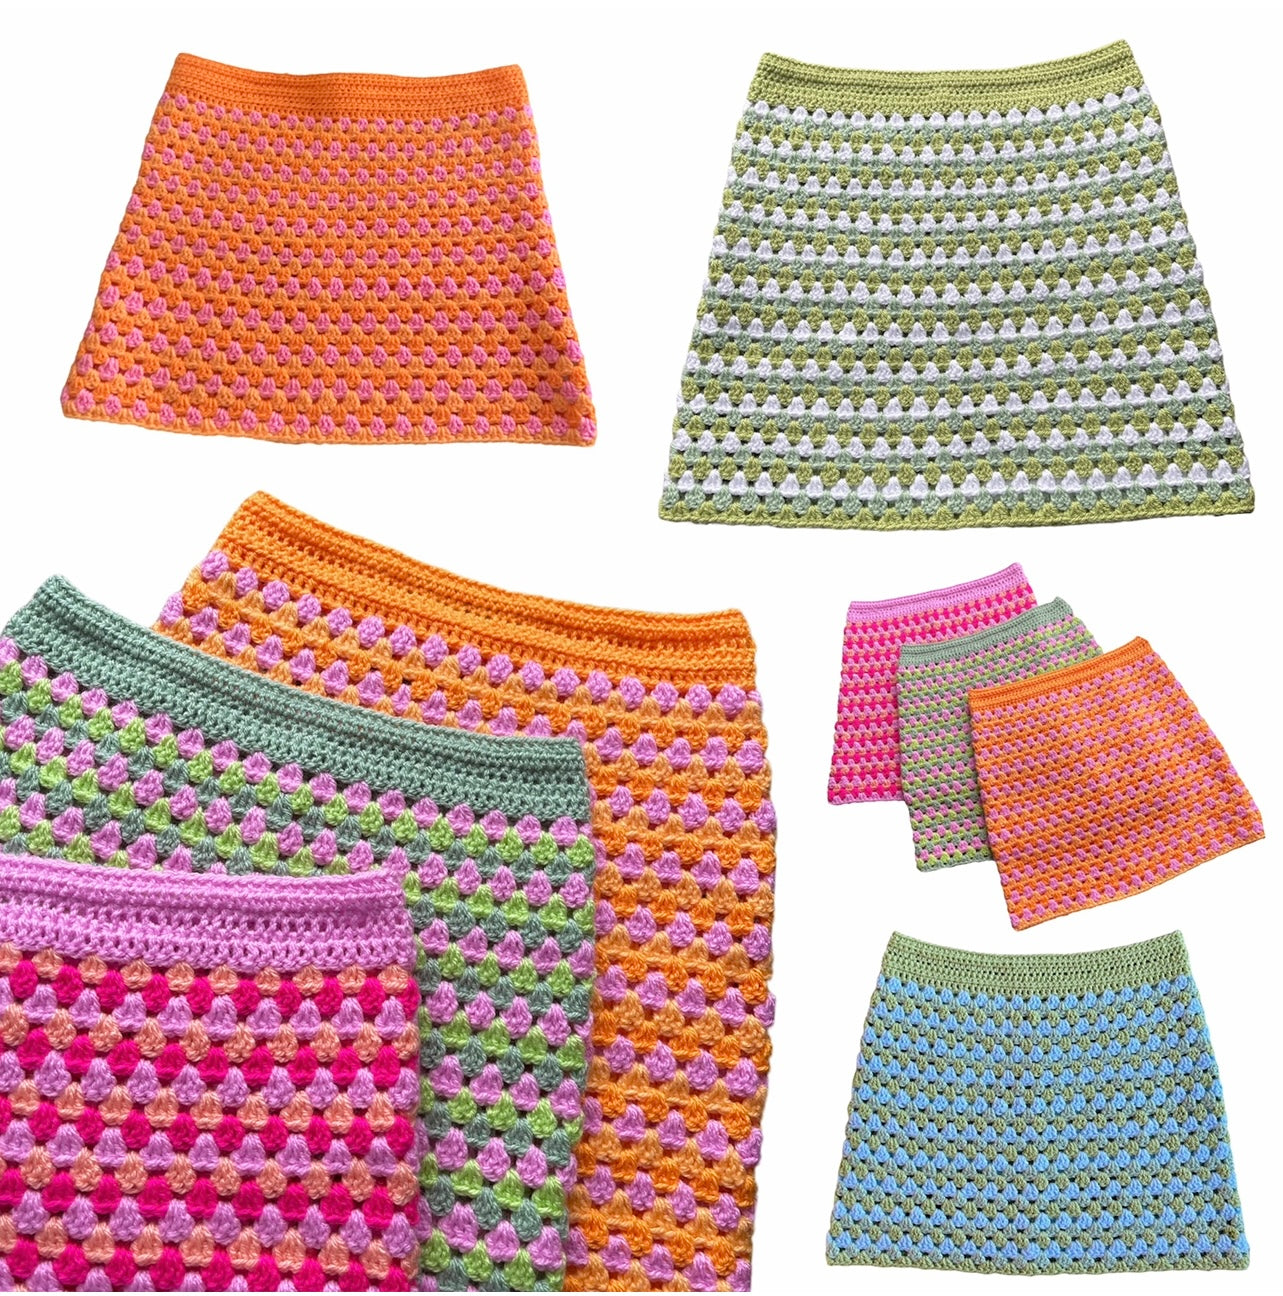 Handmade 100% cotton retro crochet skirt in green, orange & yellow